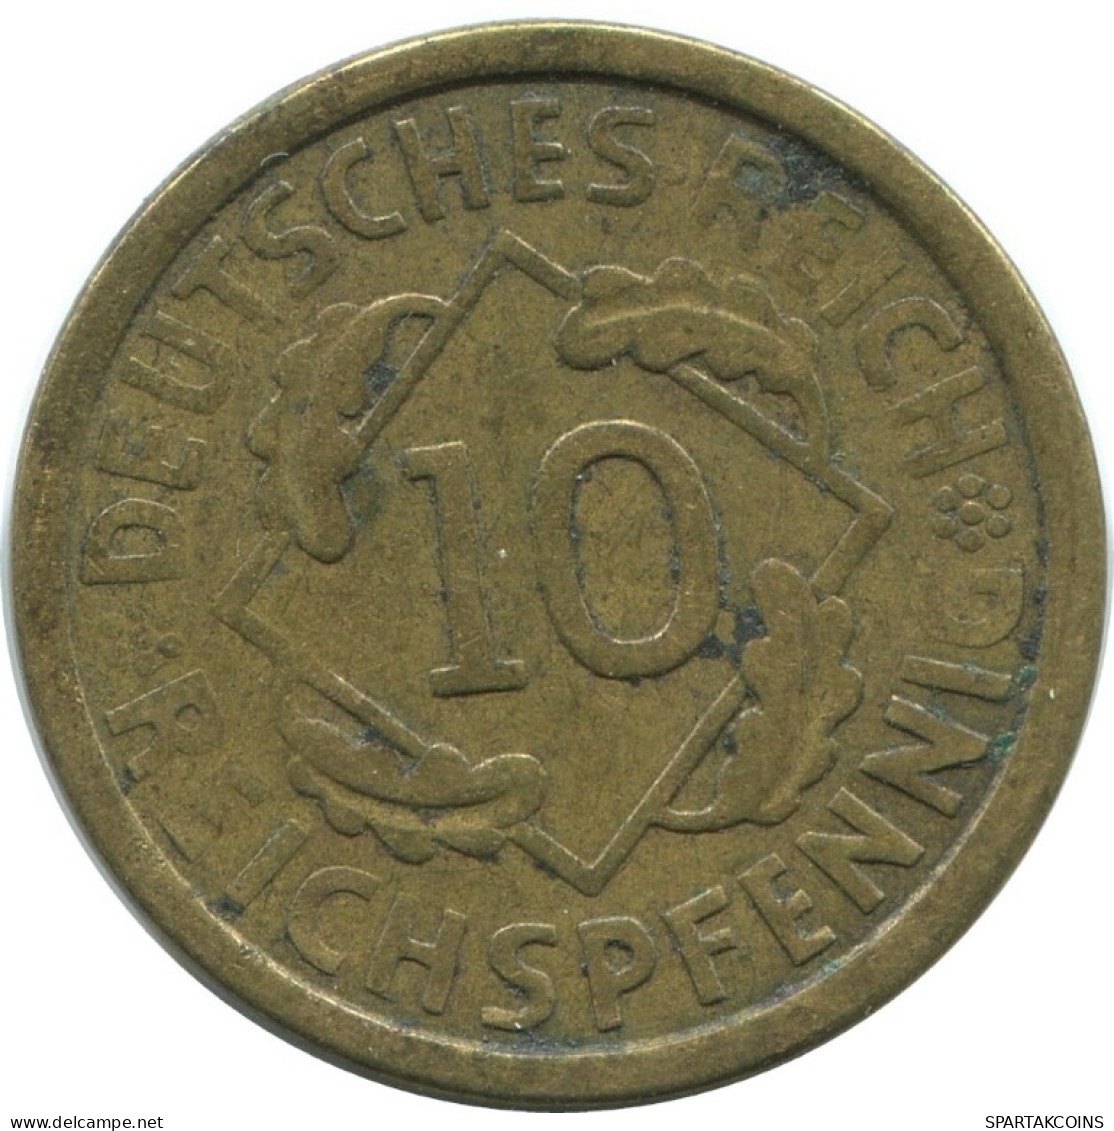 10 REICHSPFENNIG 1924 A ALEMANIA Moneda GERMANY #AD575.9.E.A - 10 Rentenpfennig & 10 Reichspfennig